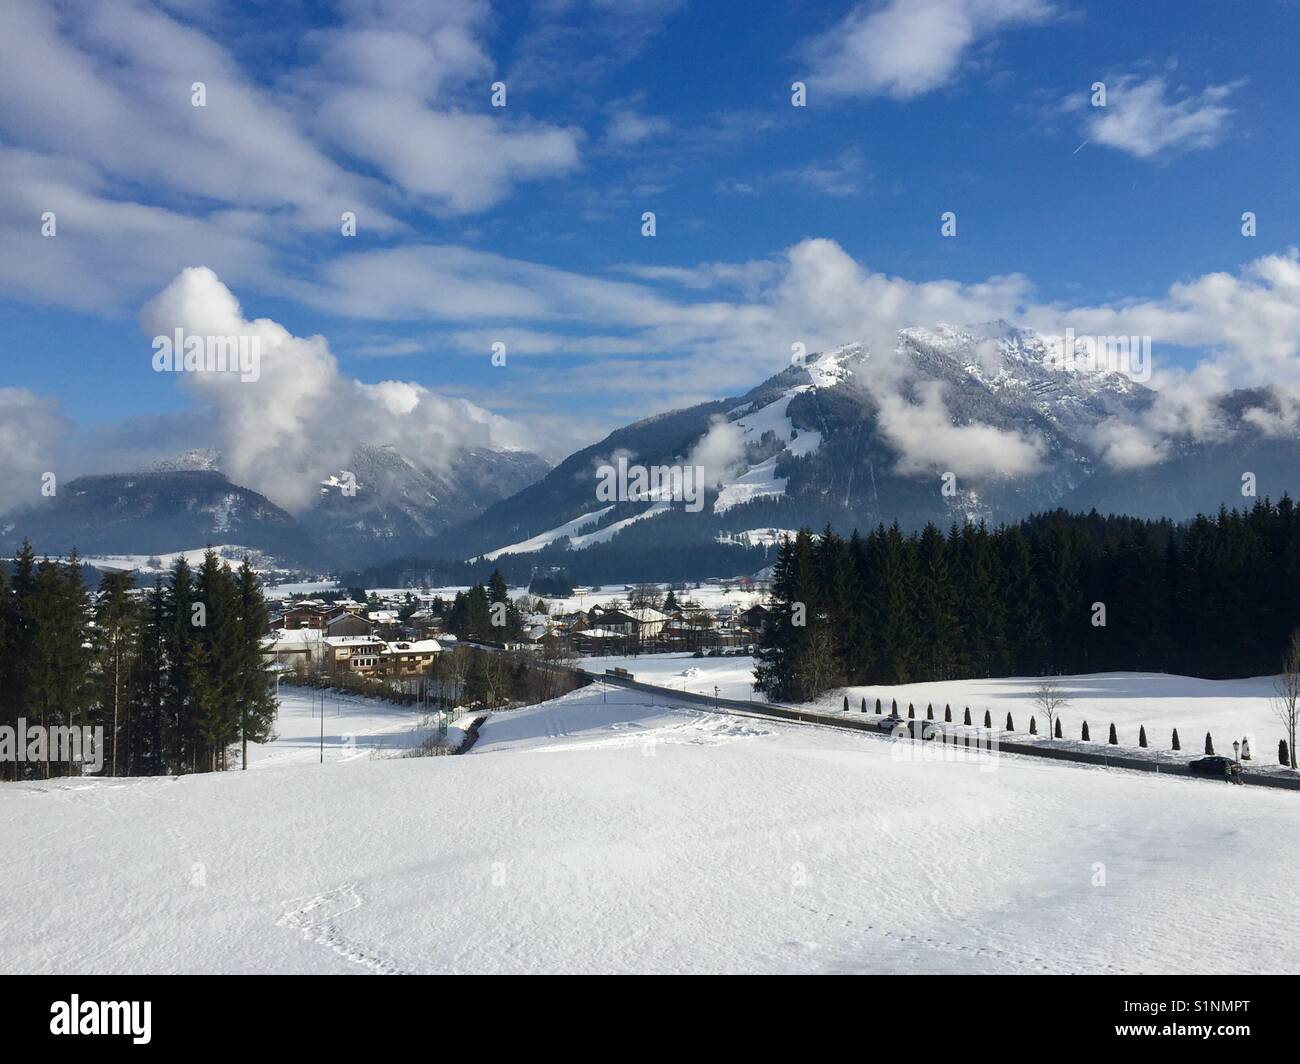 View to the mountain with The ski arena in kössen Austria Stock Photo